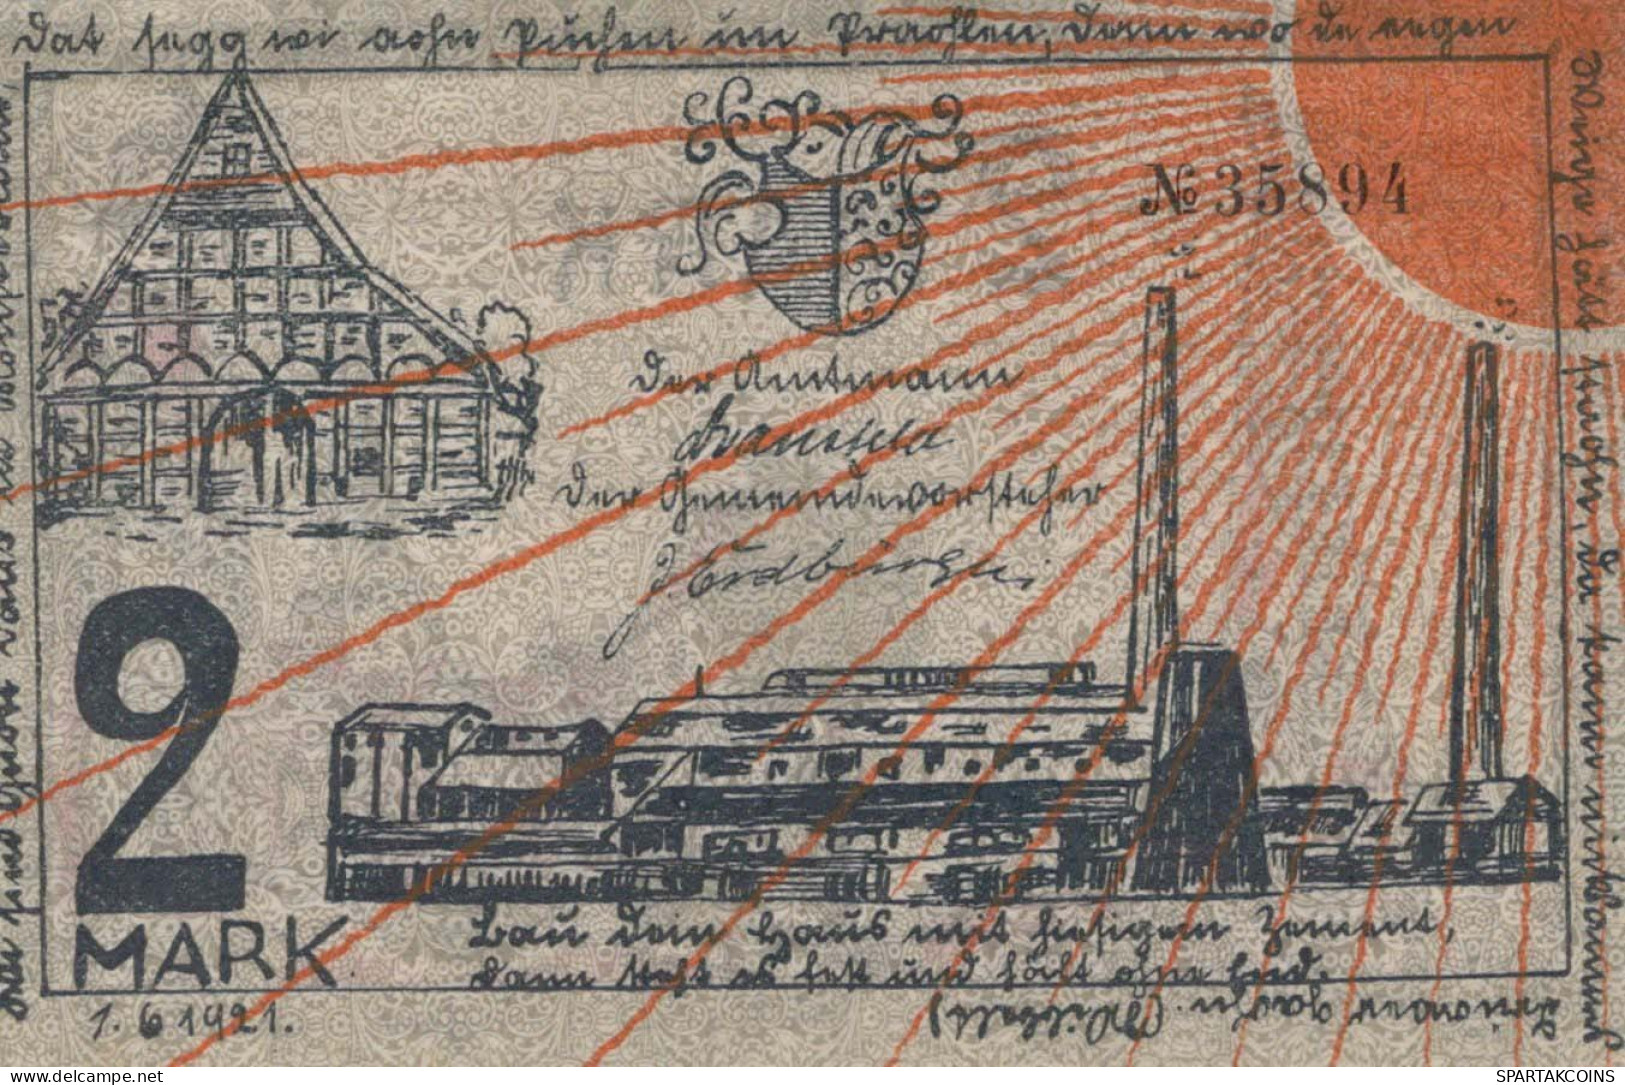 2 MARK 1921 Stadt ENNIGERLOH Westphalia UNC DEUTSCHLAND Notgeld Banknote #PB258 - [11] Emissions Locales